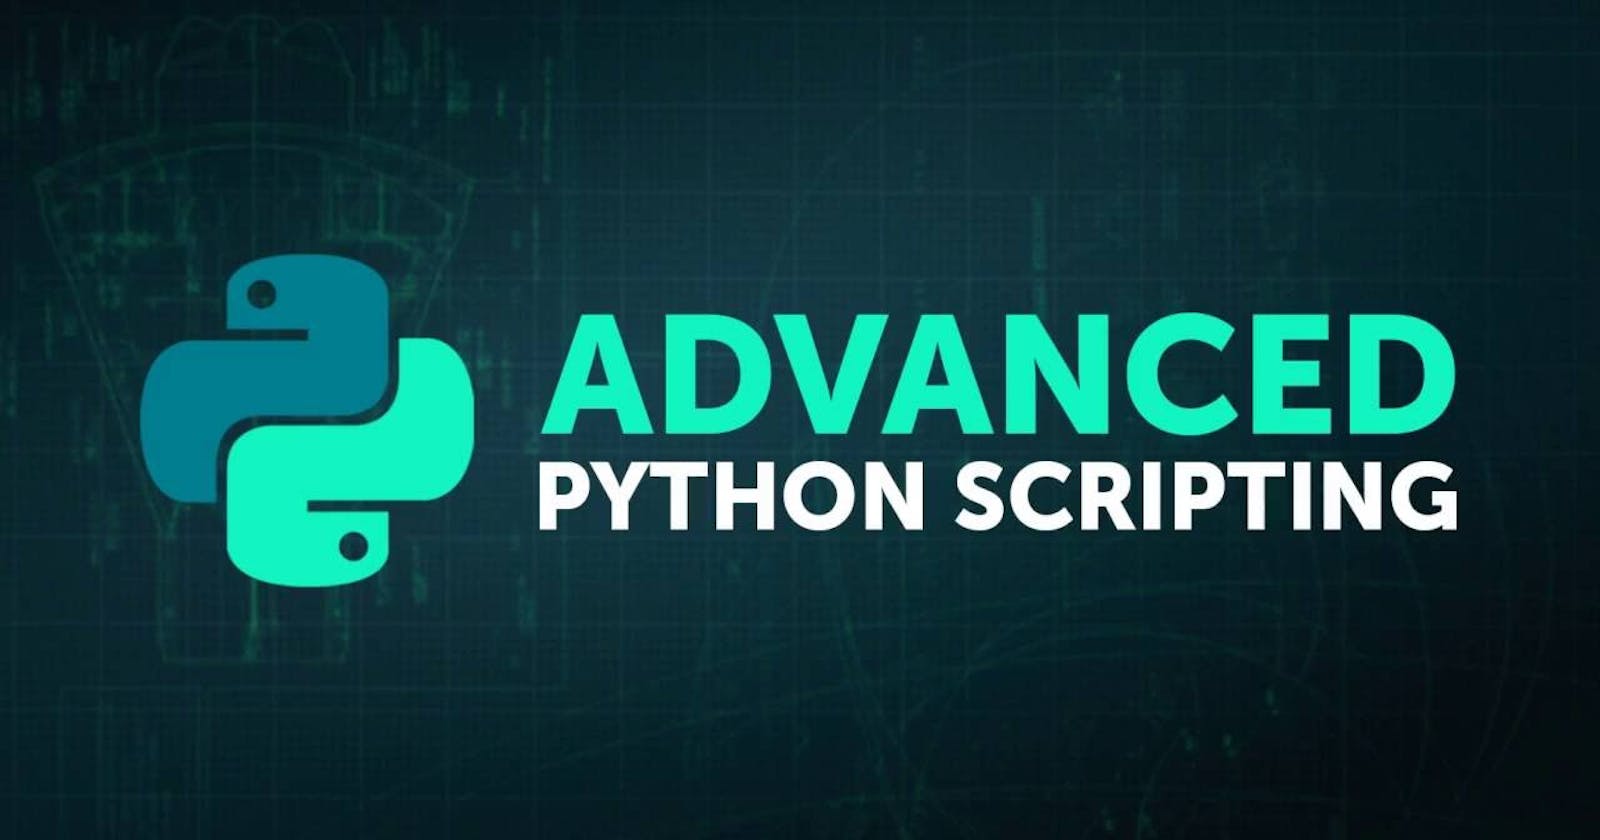 Python Scripting Made Easy